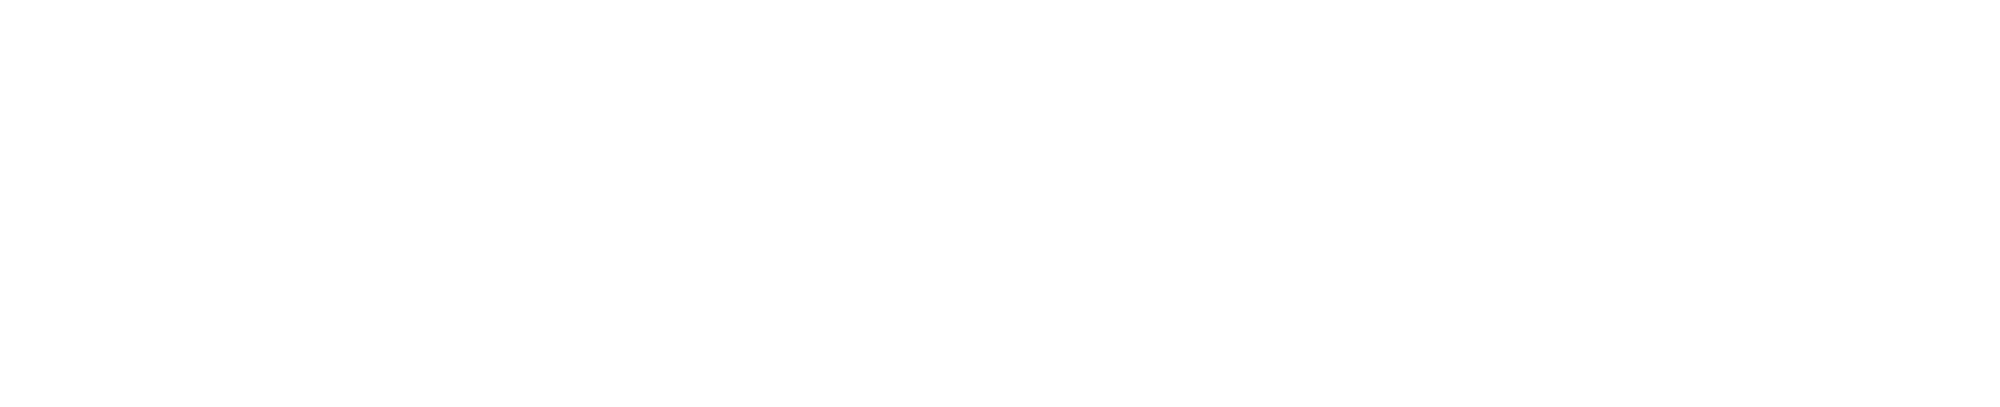 IgE Food Allergy Advance Test